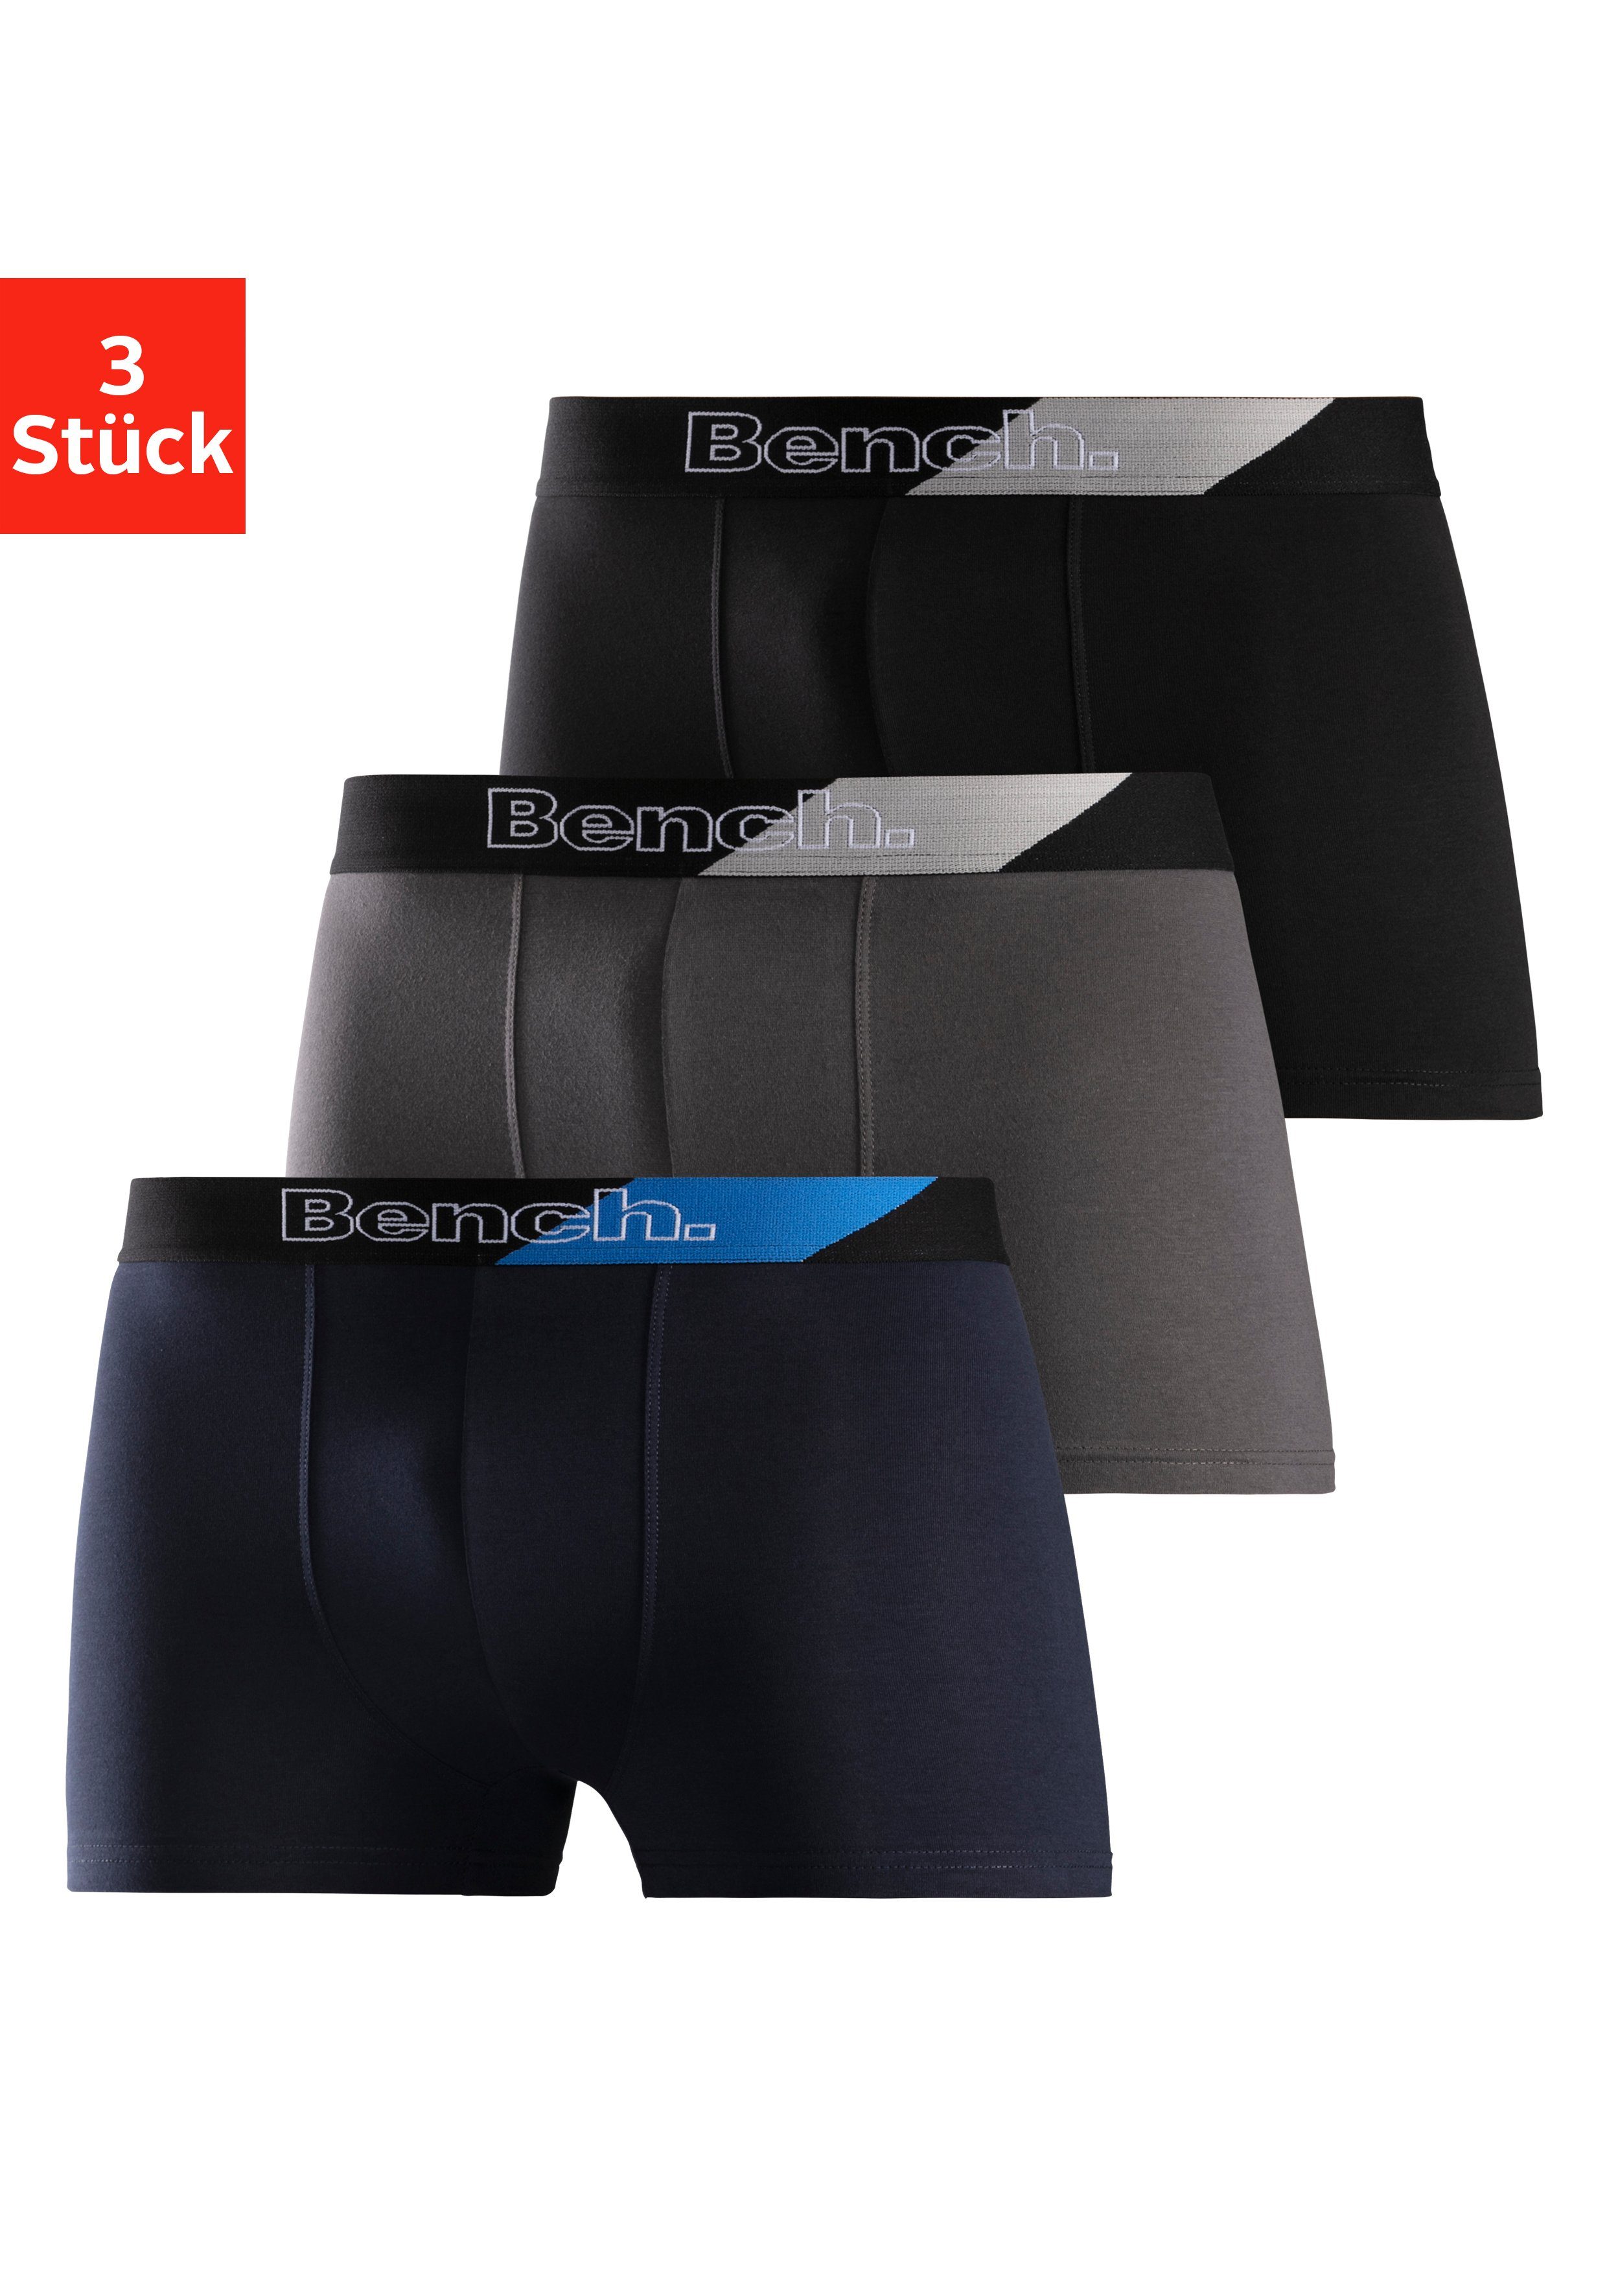 Günstige Unterhosen für Herren kaufen » Unterhosen SALE | OTTO